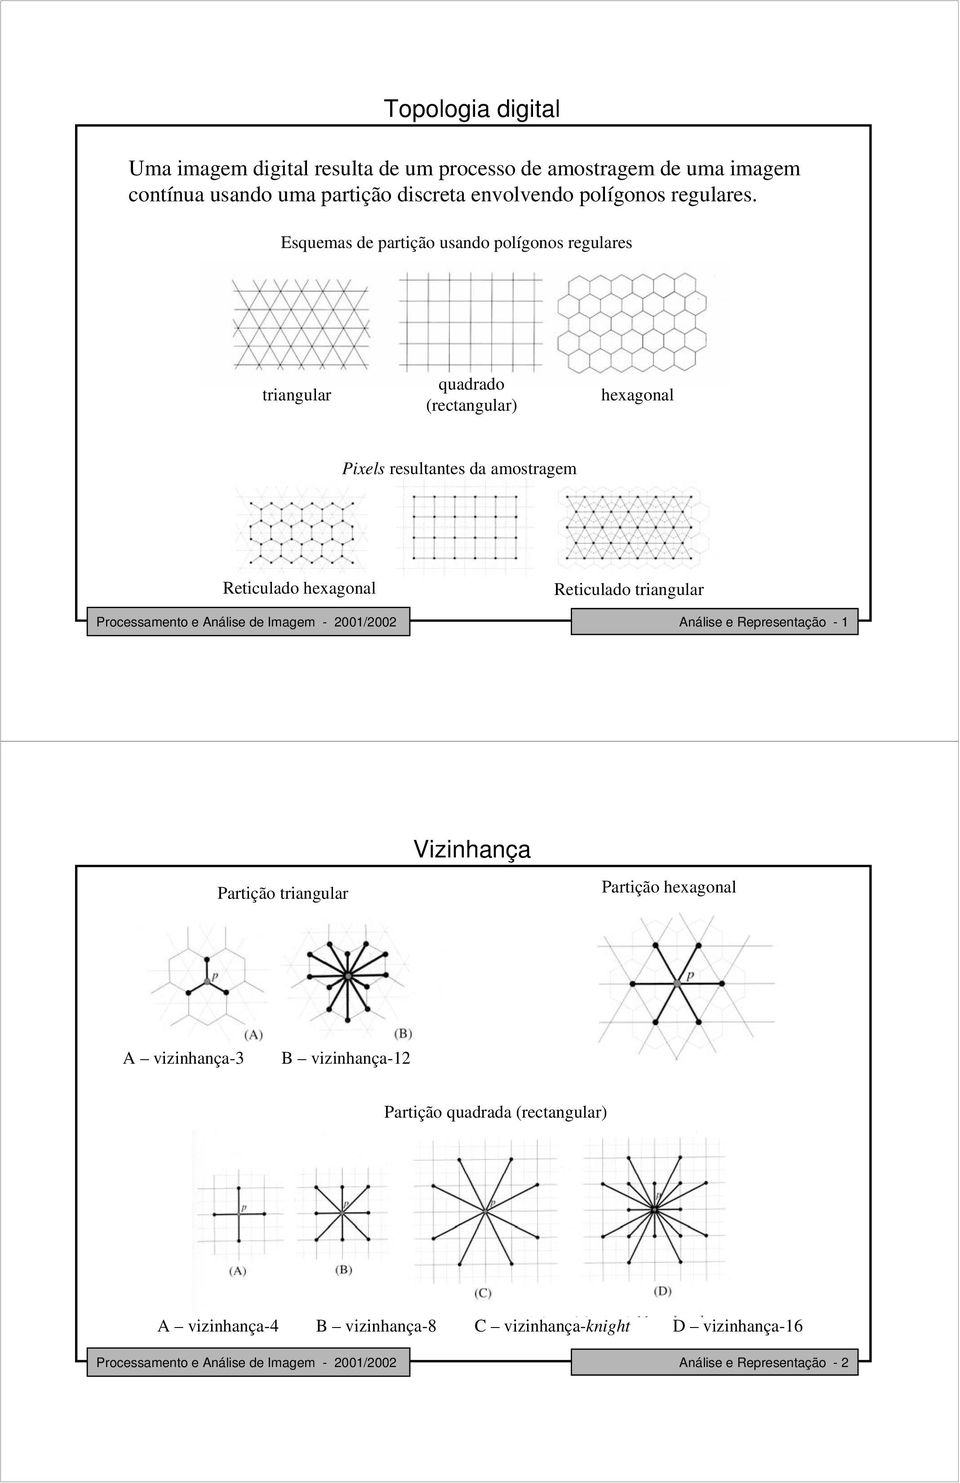 Esuemas de artição usando olígonos regulares triangular uadrado (rectangular) hexagonal Pixels resultantes da amostragem Reticulado